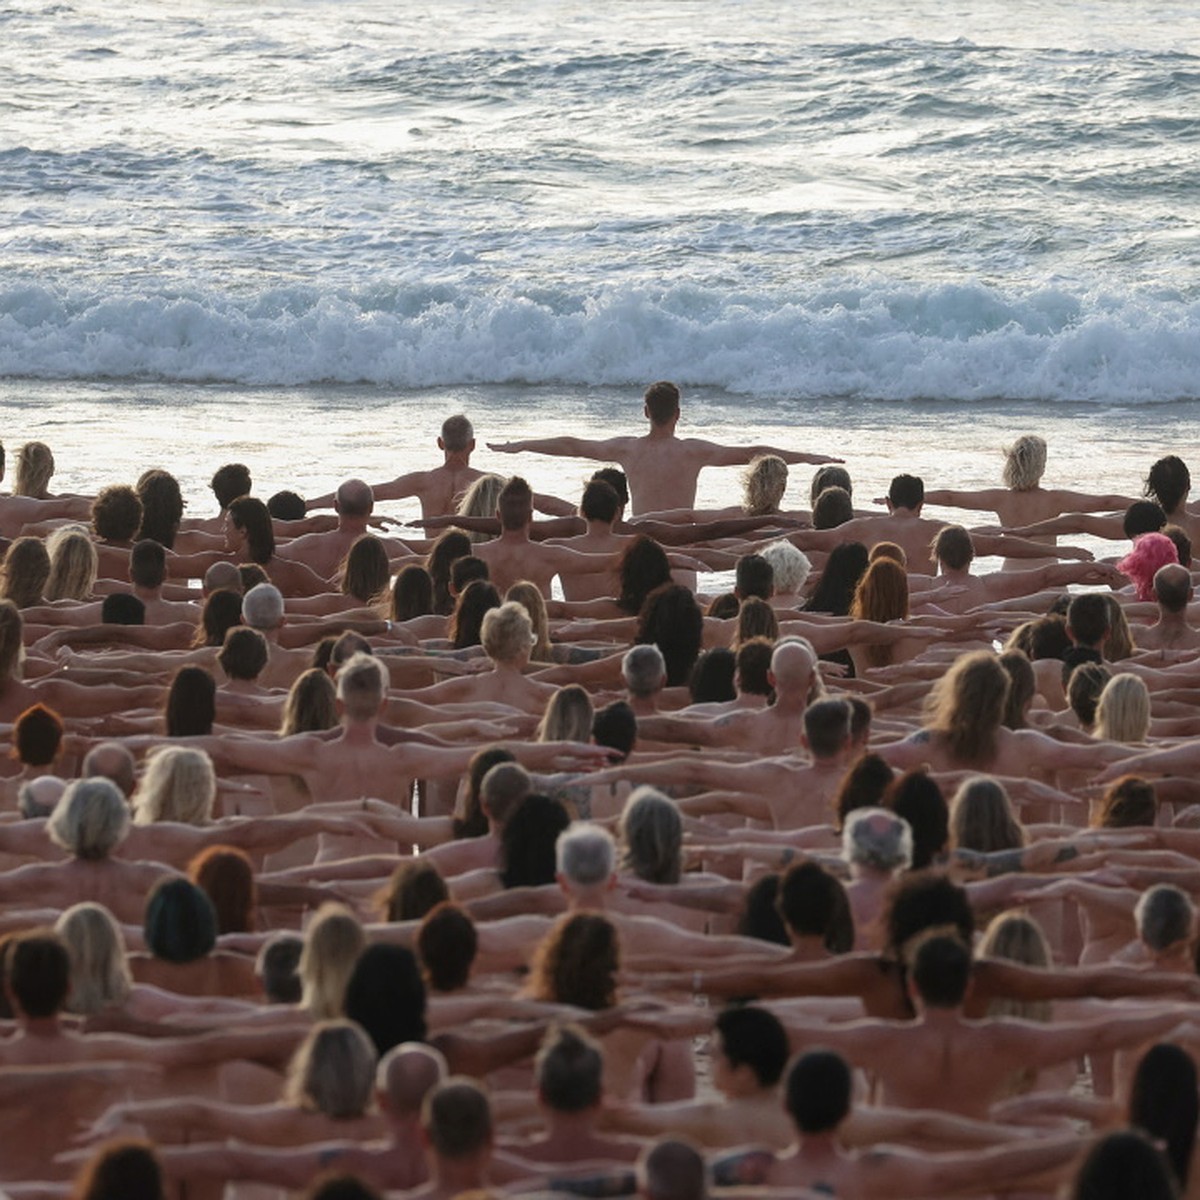 фото голых юношей на пляже